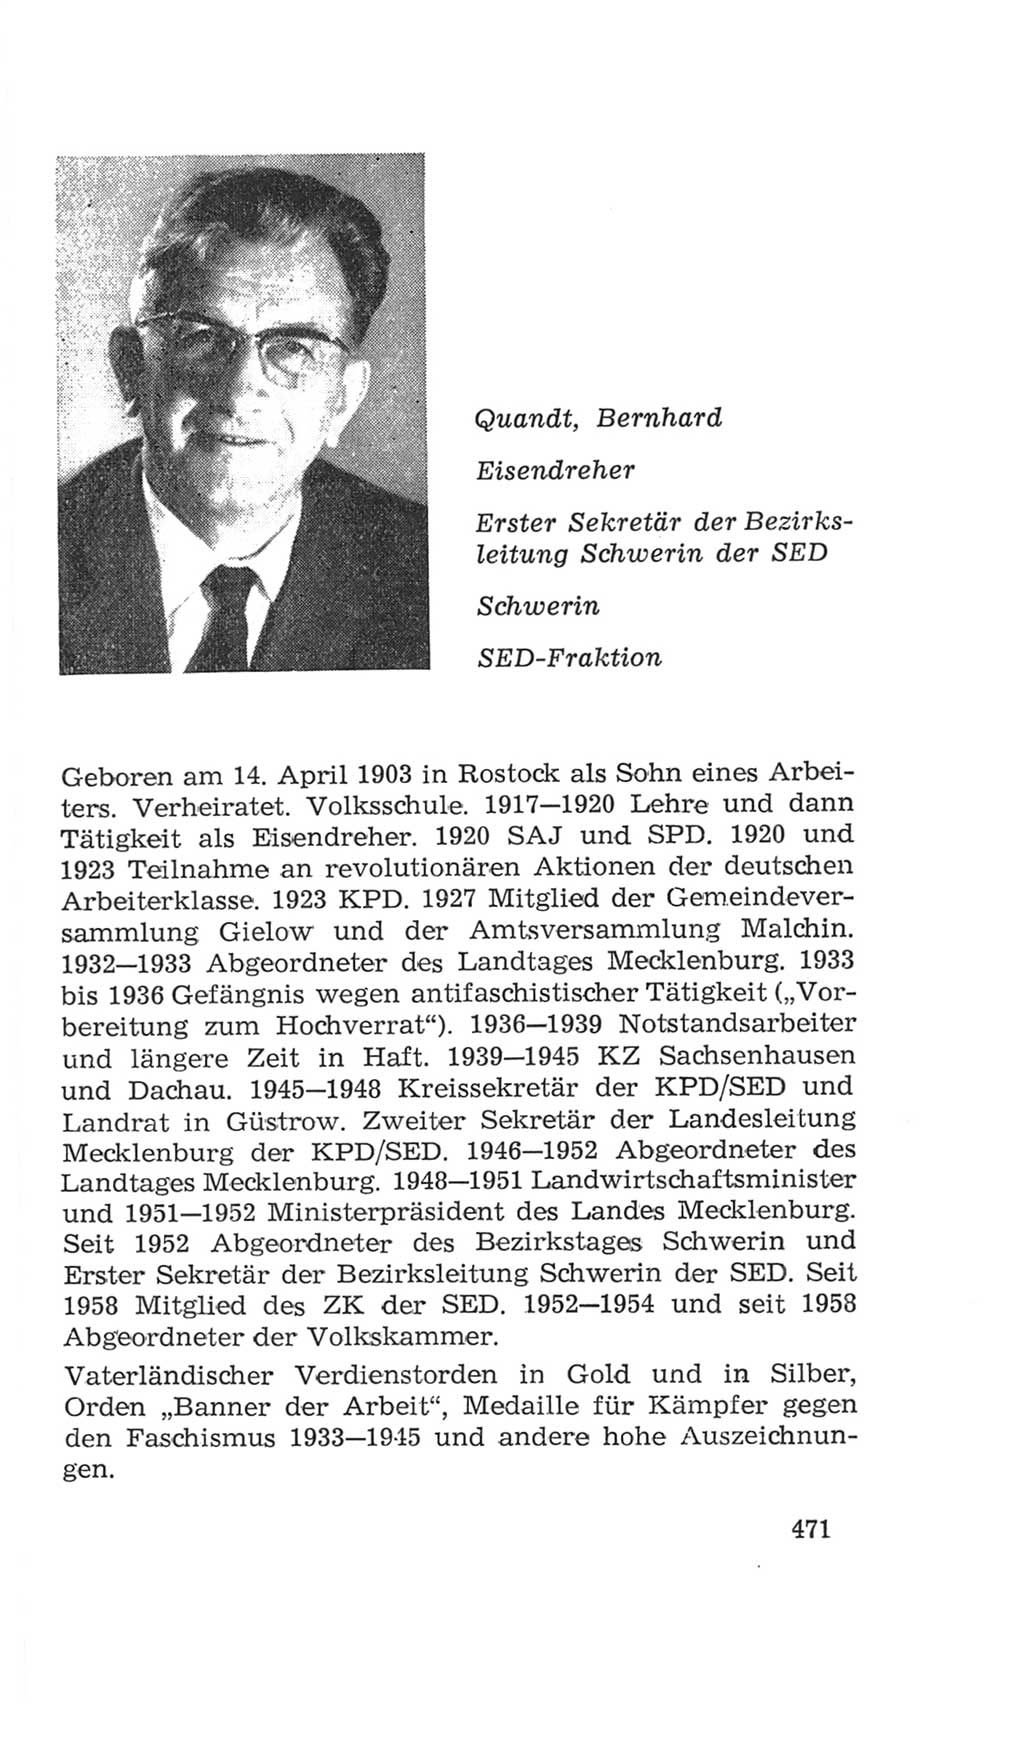 Volkskammer (VK) der Deutschen Demokratischen Republik (DDR), 4. Wahlperiode 1963-1967, Seite 471 (VK. DDR 4. WP. 1963-1967, S. 471)